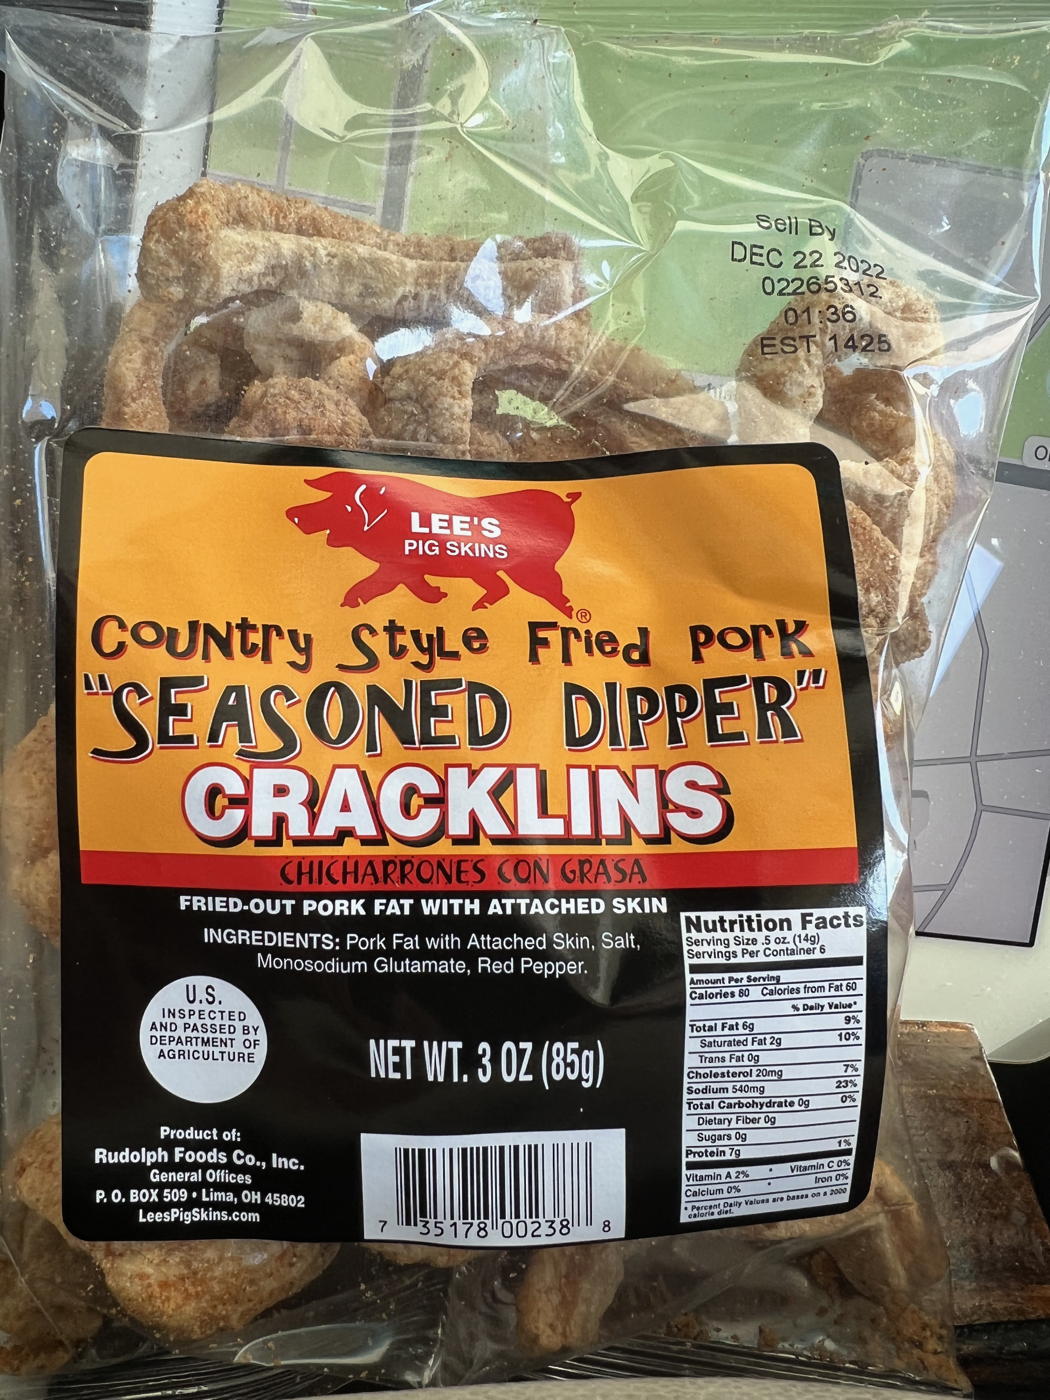 Lee’s Pig Skins Cracklins: Country style fried pork “seasoned dipper” cracklins from Lee’s Pig Skins.; salty snacks; pork; road food